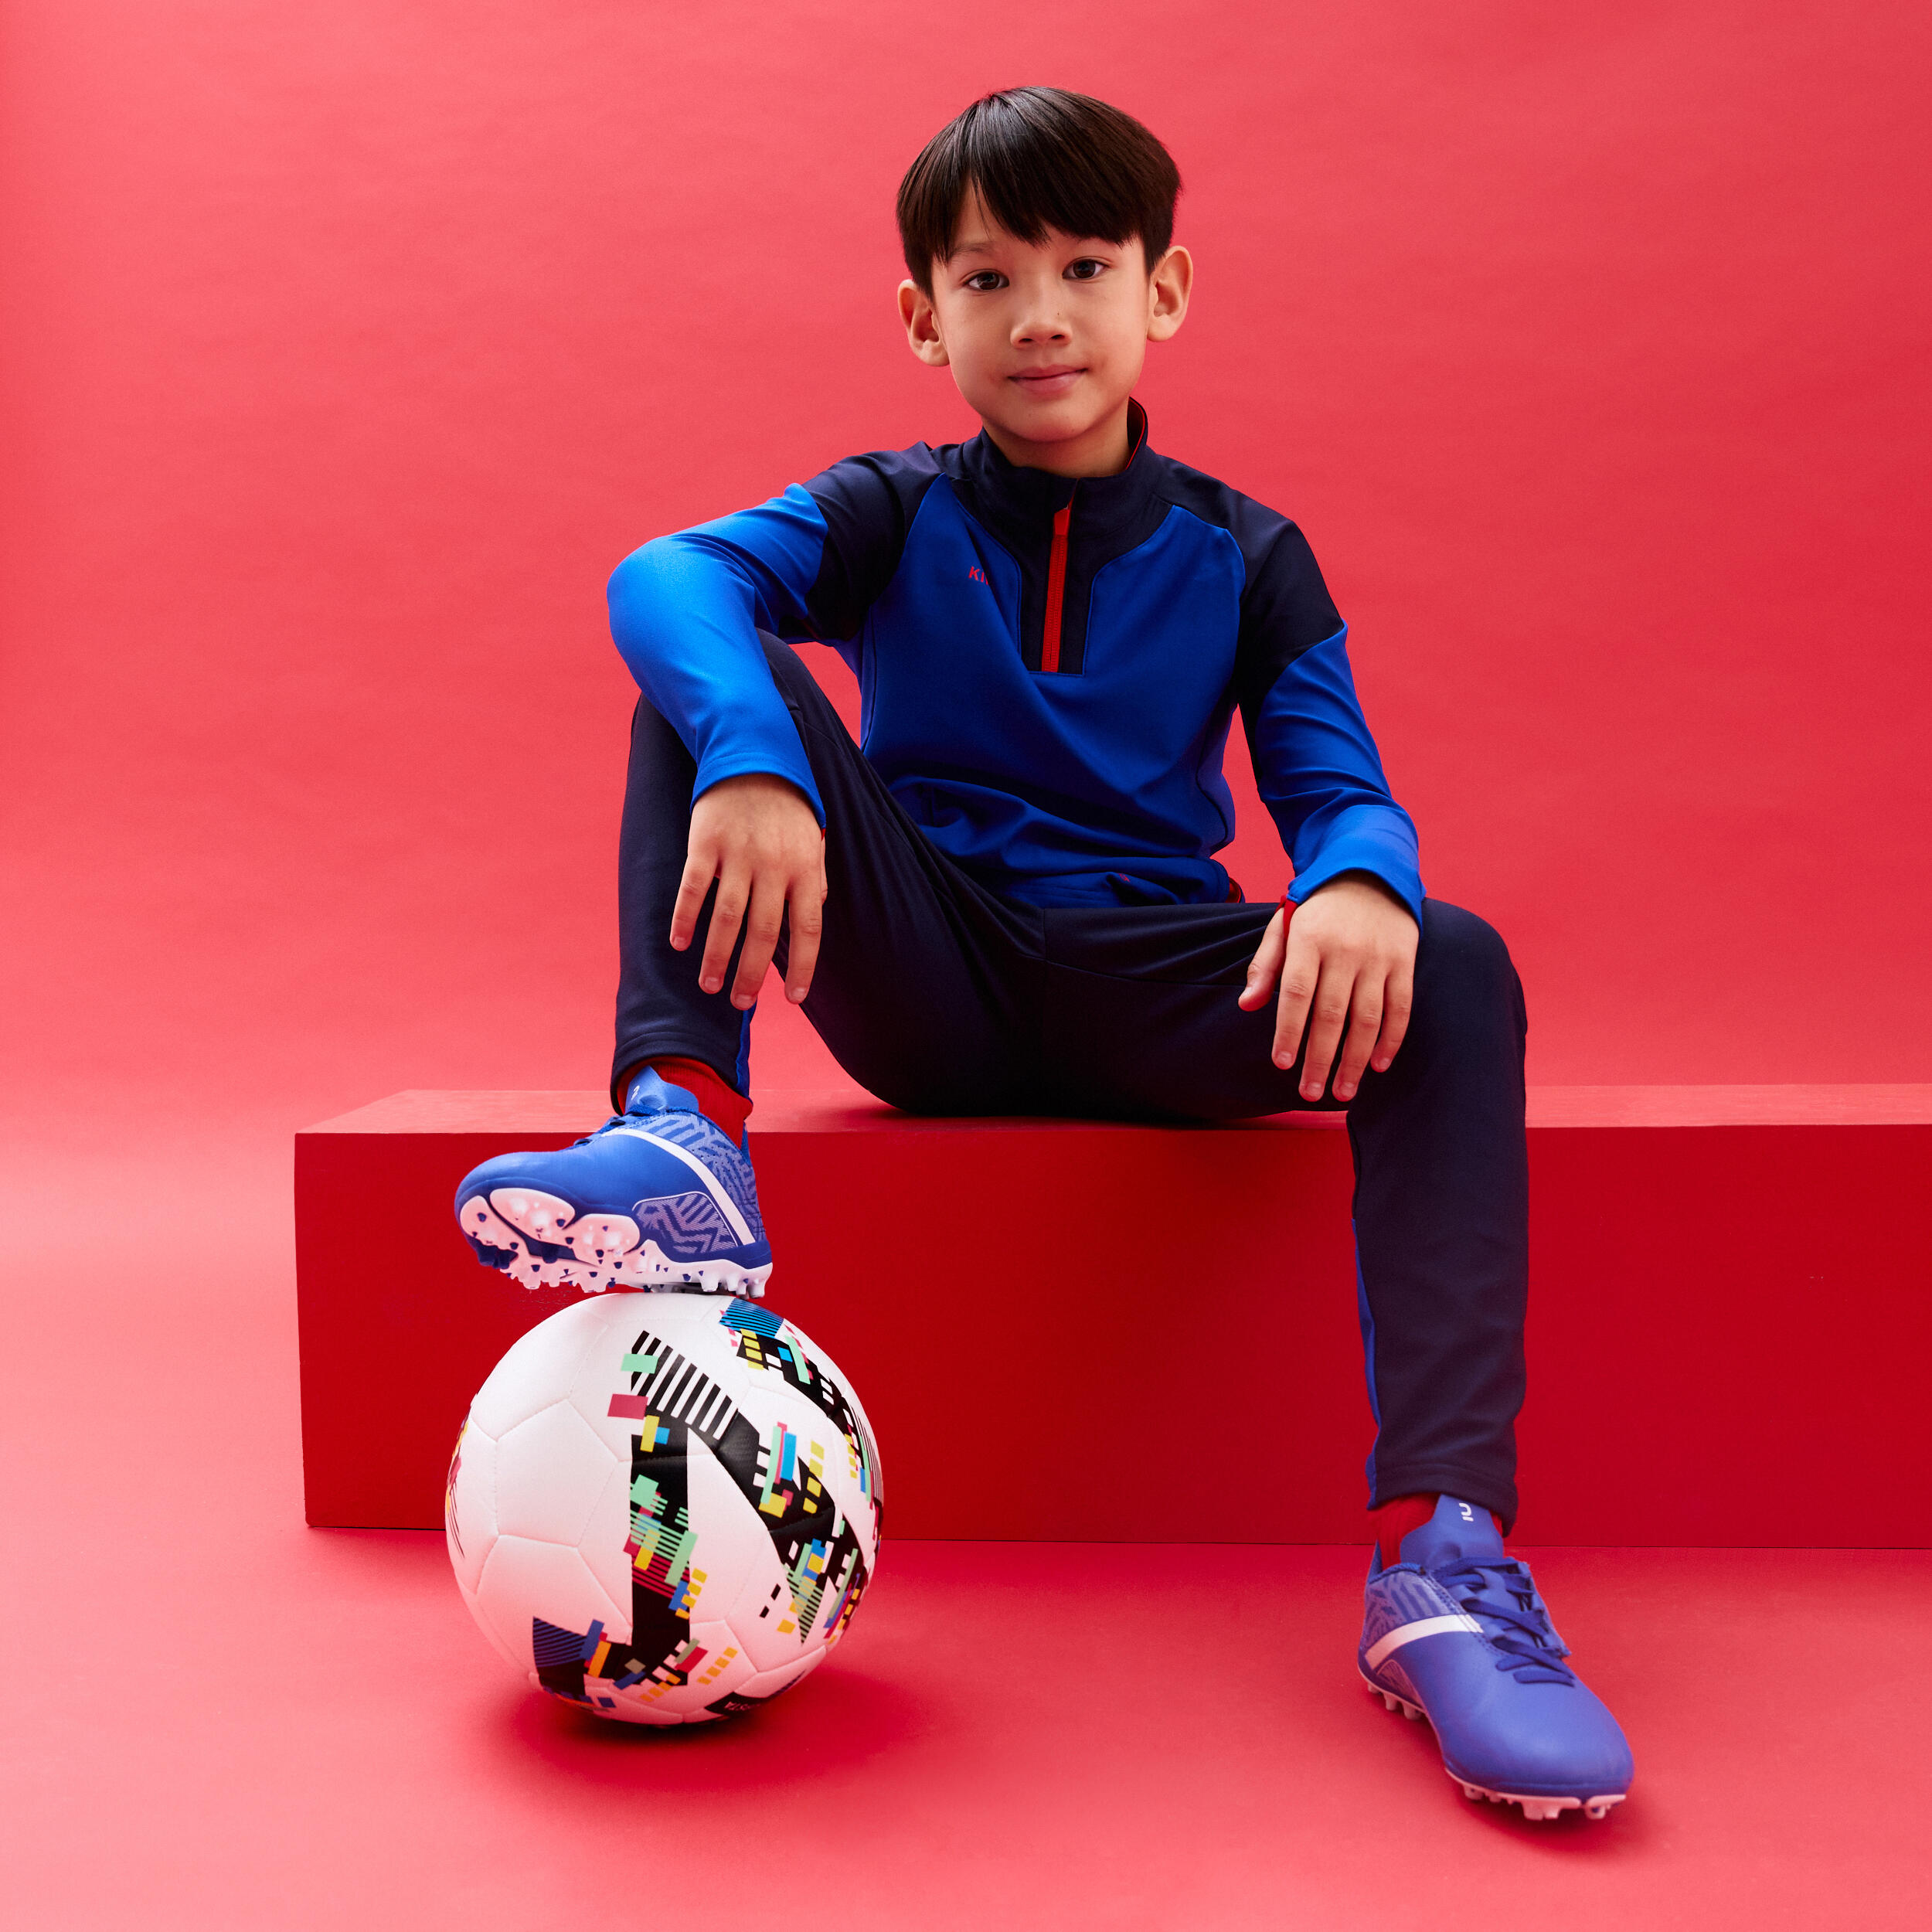 Kids' Football Bottoms Viralto - Navy/Blue/Neon Orange 3/4